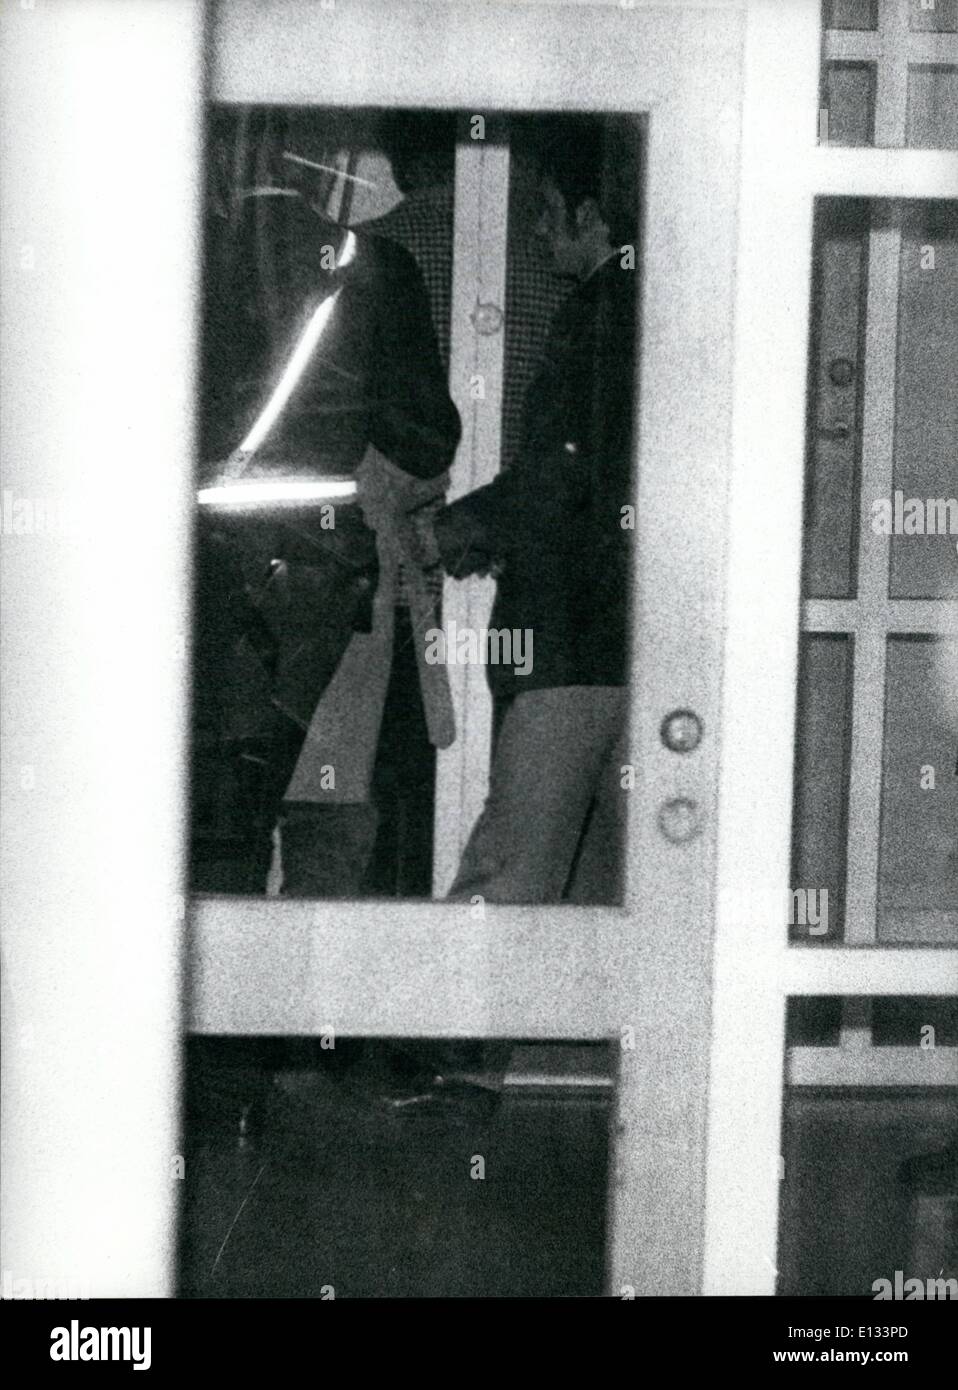 Febrero 26, 2012 - secuestro en Suecia: Scandinavian Airlines DC 9 fue secuestrada por tres hombres no identificados durante un vuelo doméstico desde Gothenburg a Estocolmo el 15 de septiembre. El piloto se vio obligado a ir al aeropuerto Bulltofta en Malmo. A bordo había 86 pasajeros y una tripulación de cuatro. Los secuestradores alegó que el gobierno sueco se suelte Jugoslavian siete presos, entre ellos dos que asesinaron a los Jugoslavian embajador en Estocolmo. En espera de las liberaciones de presos los pasajeros fueron mantenidos como rehenes Foto de stock